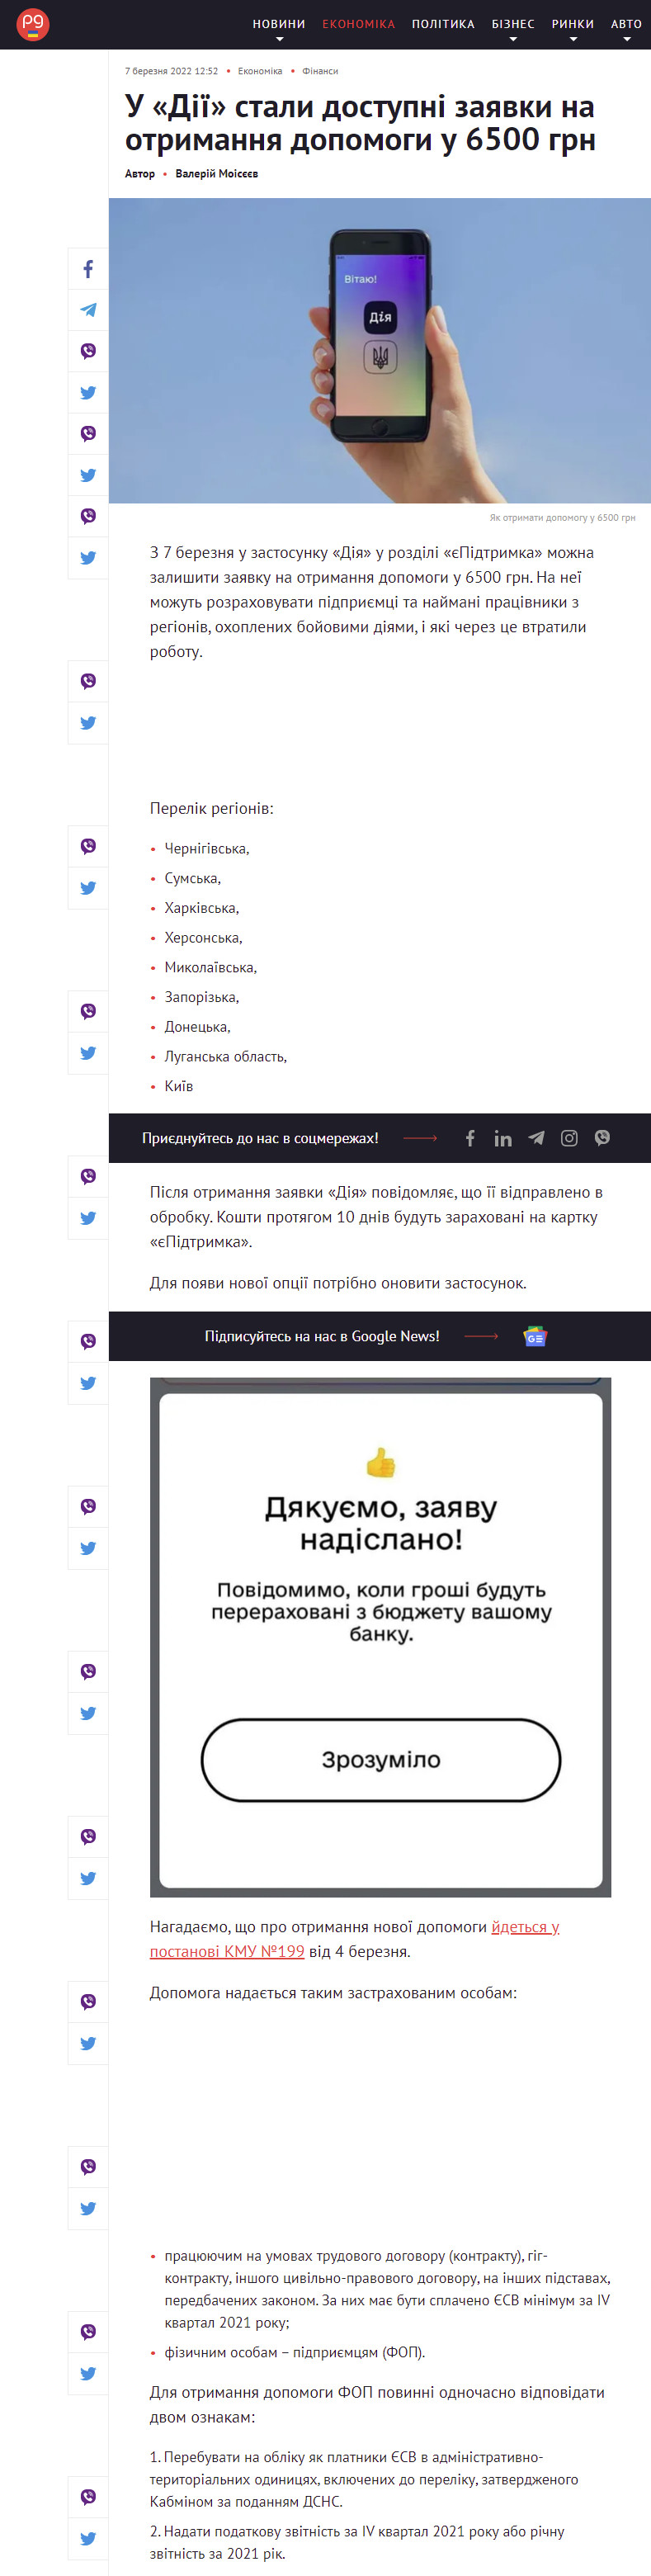 https://thepage.ua/ua/economy/yak-otrimati-dopomogu-u-6500-grn